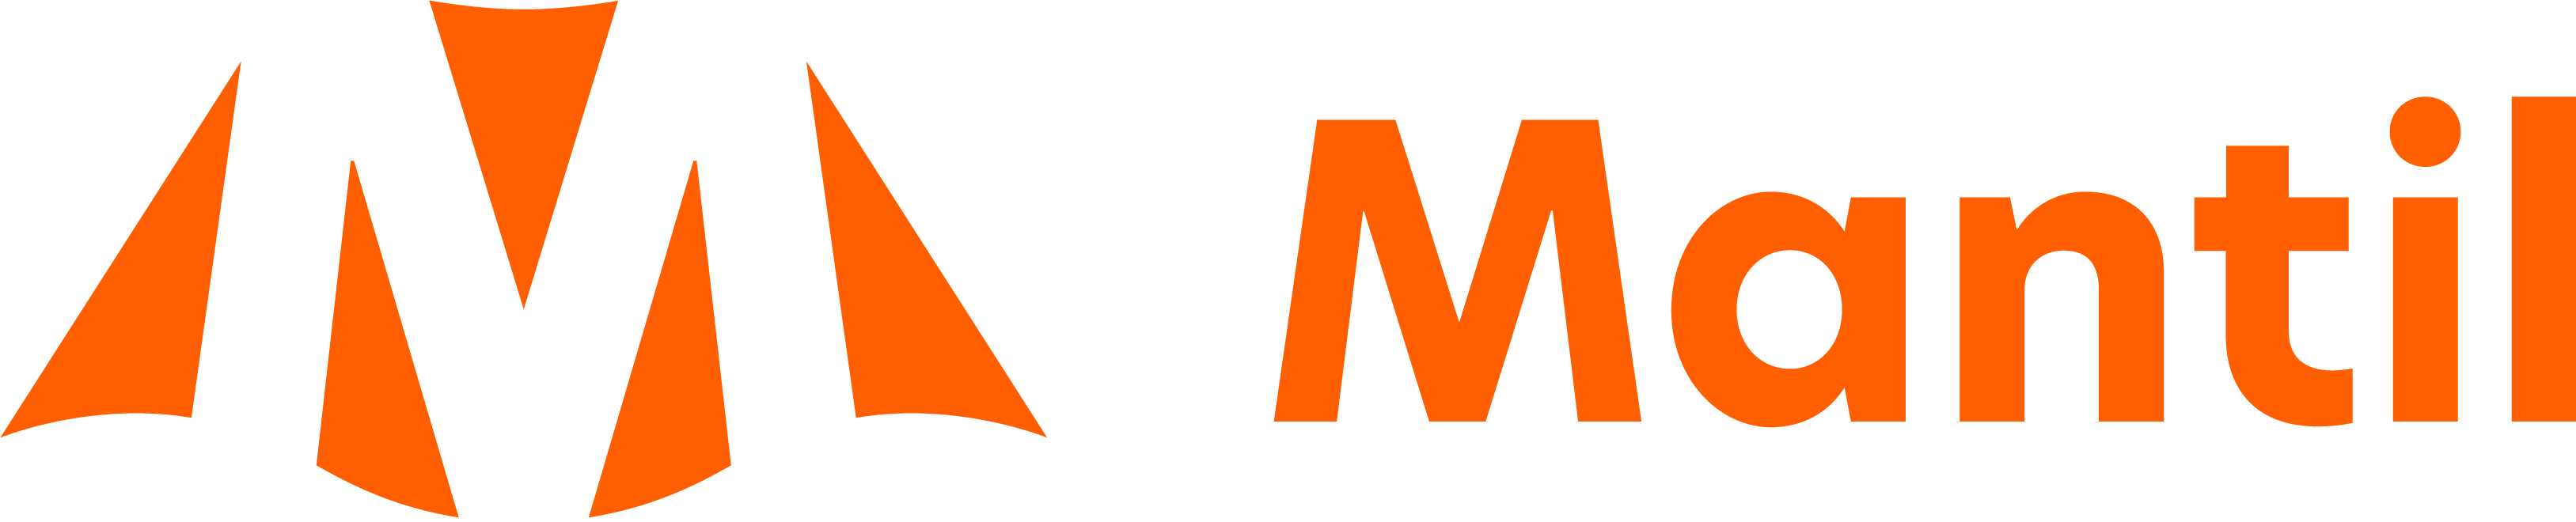 mantil-logo-lockup-1-orange-RGB.png